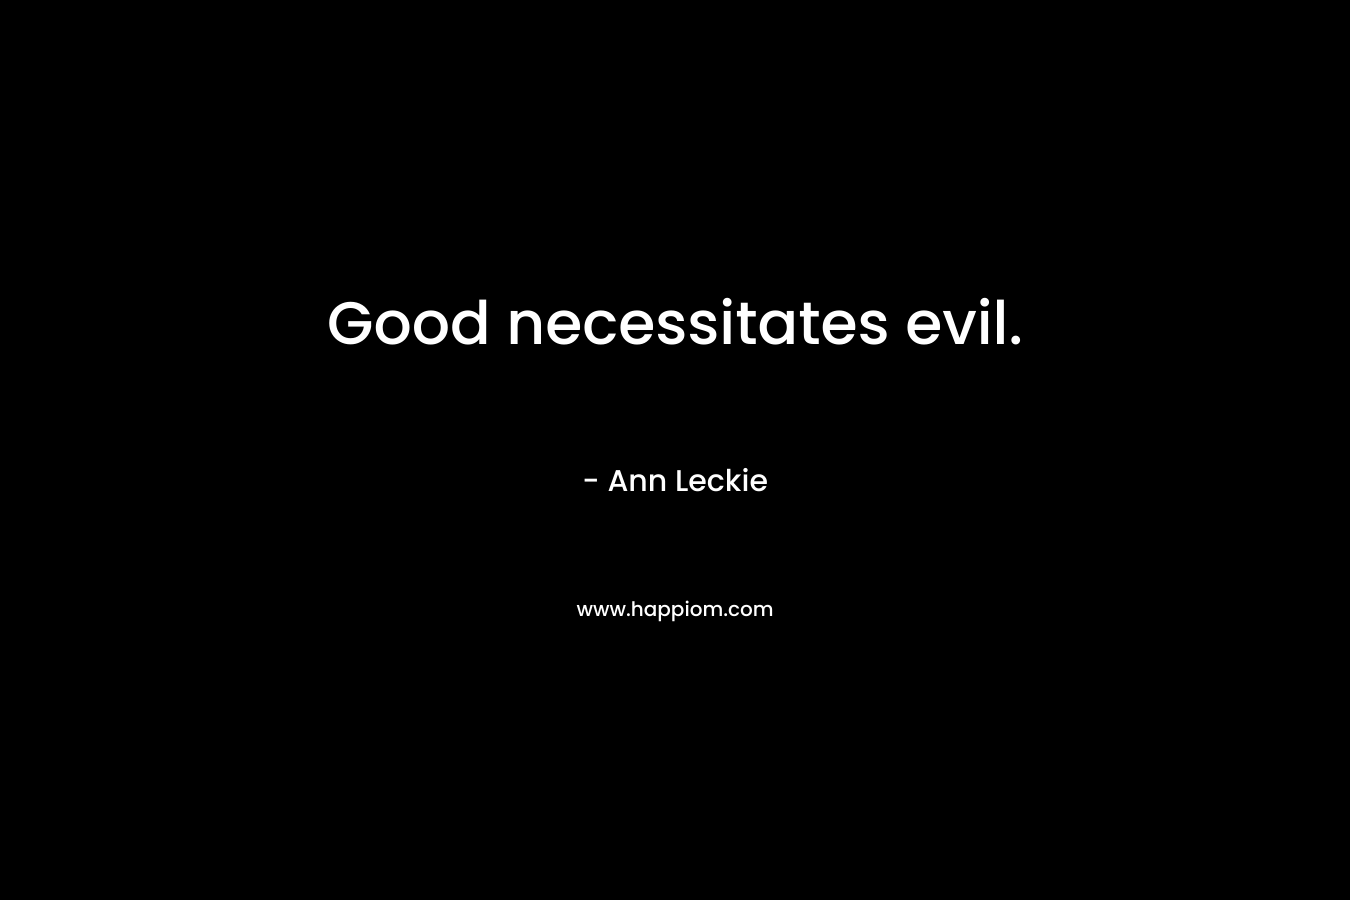 Good necessitates evil.